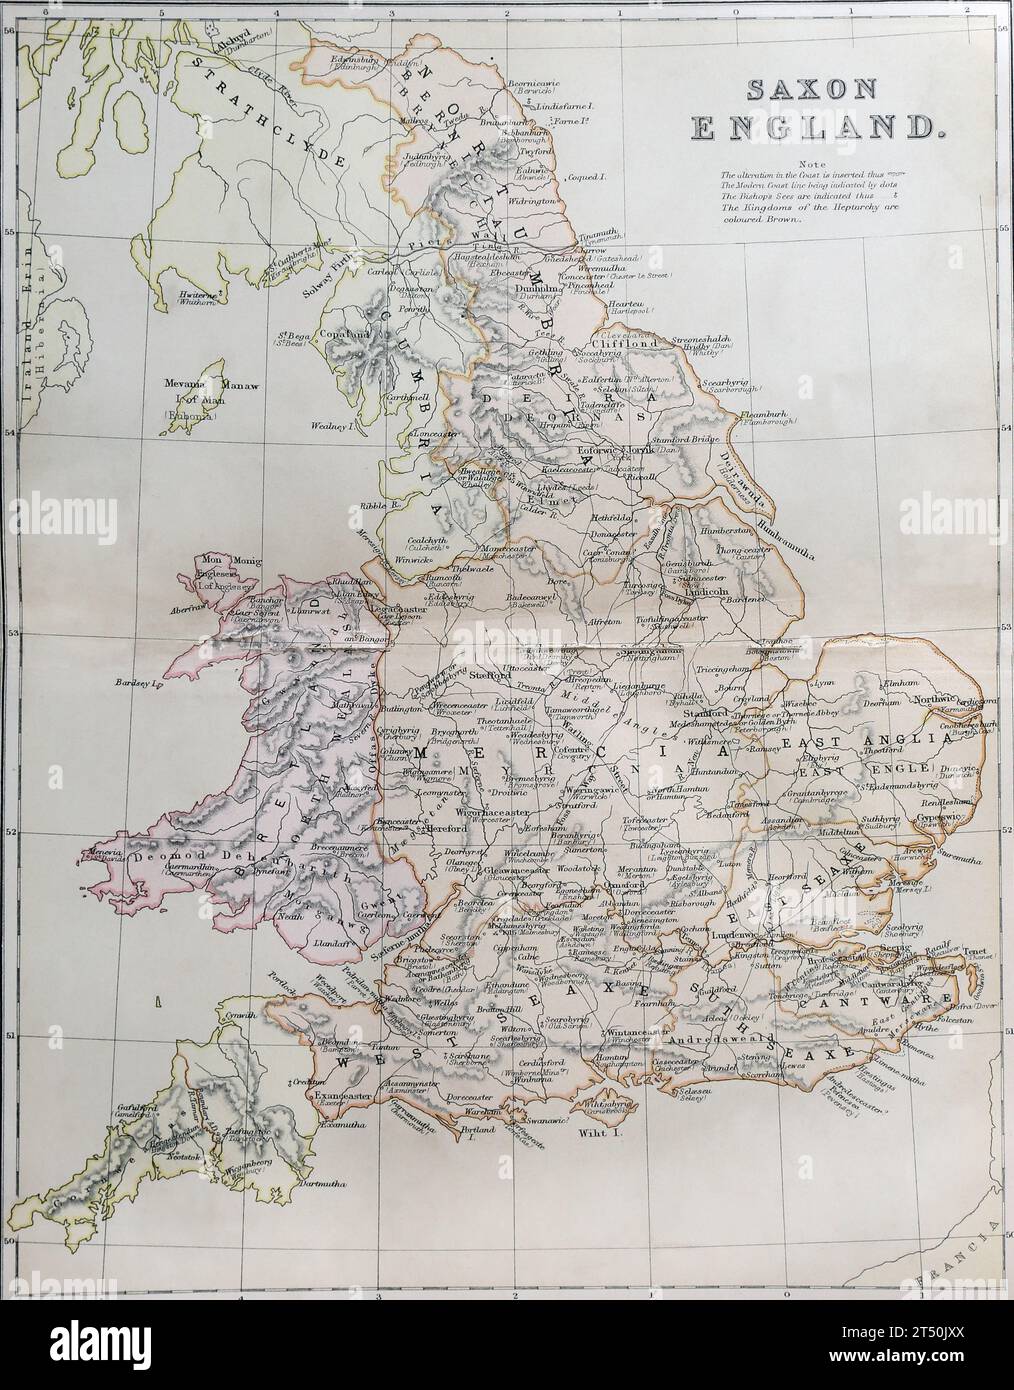 Karte des Sächsischen Englands aus der Popular History of England Band 1 von Charles Macfarlene und Thomas Archer Stockfoto